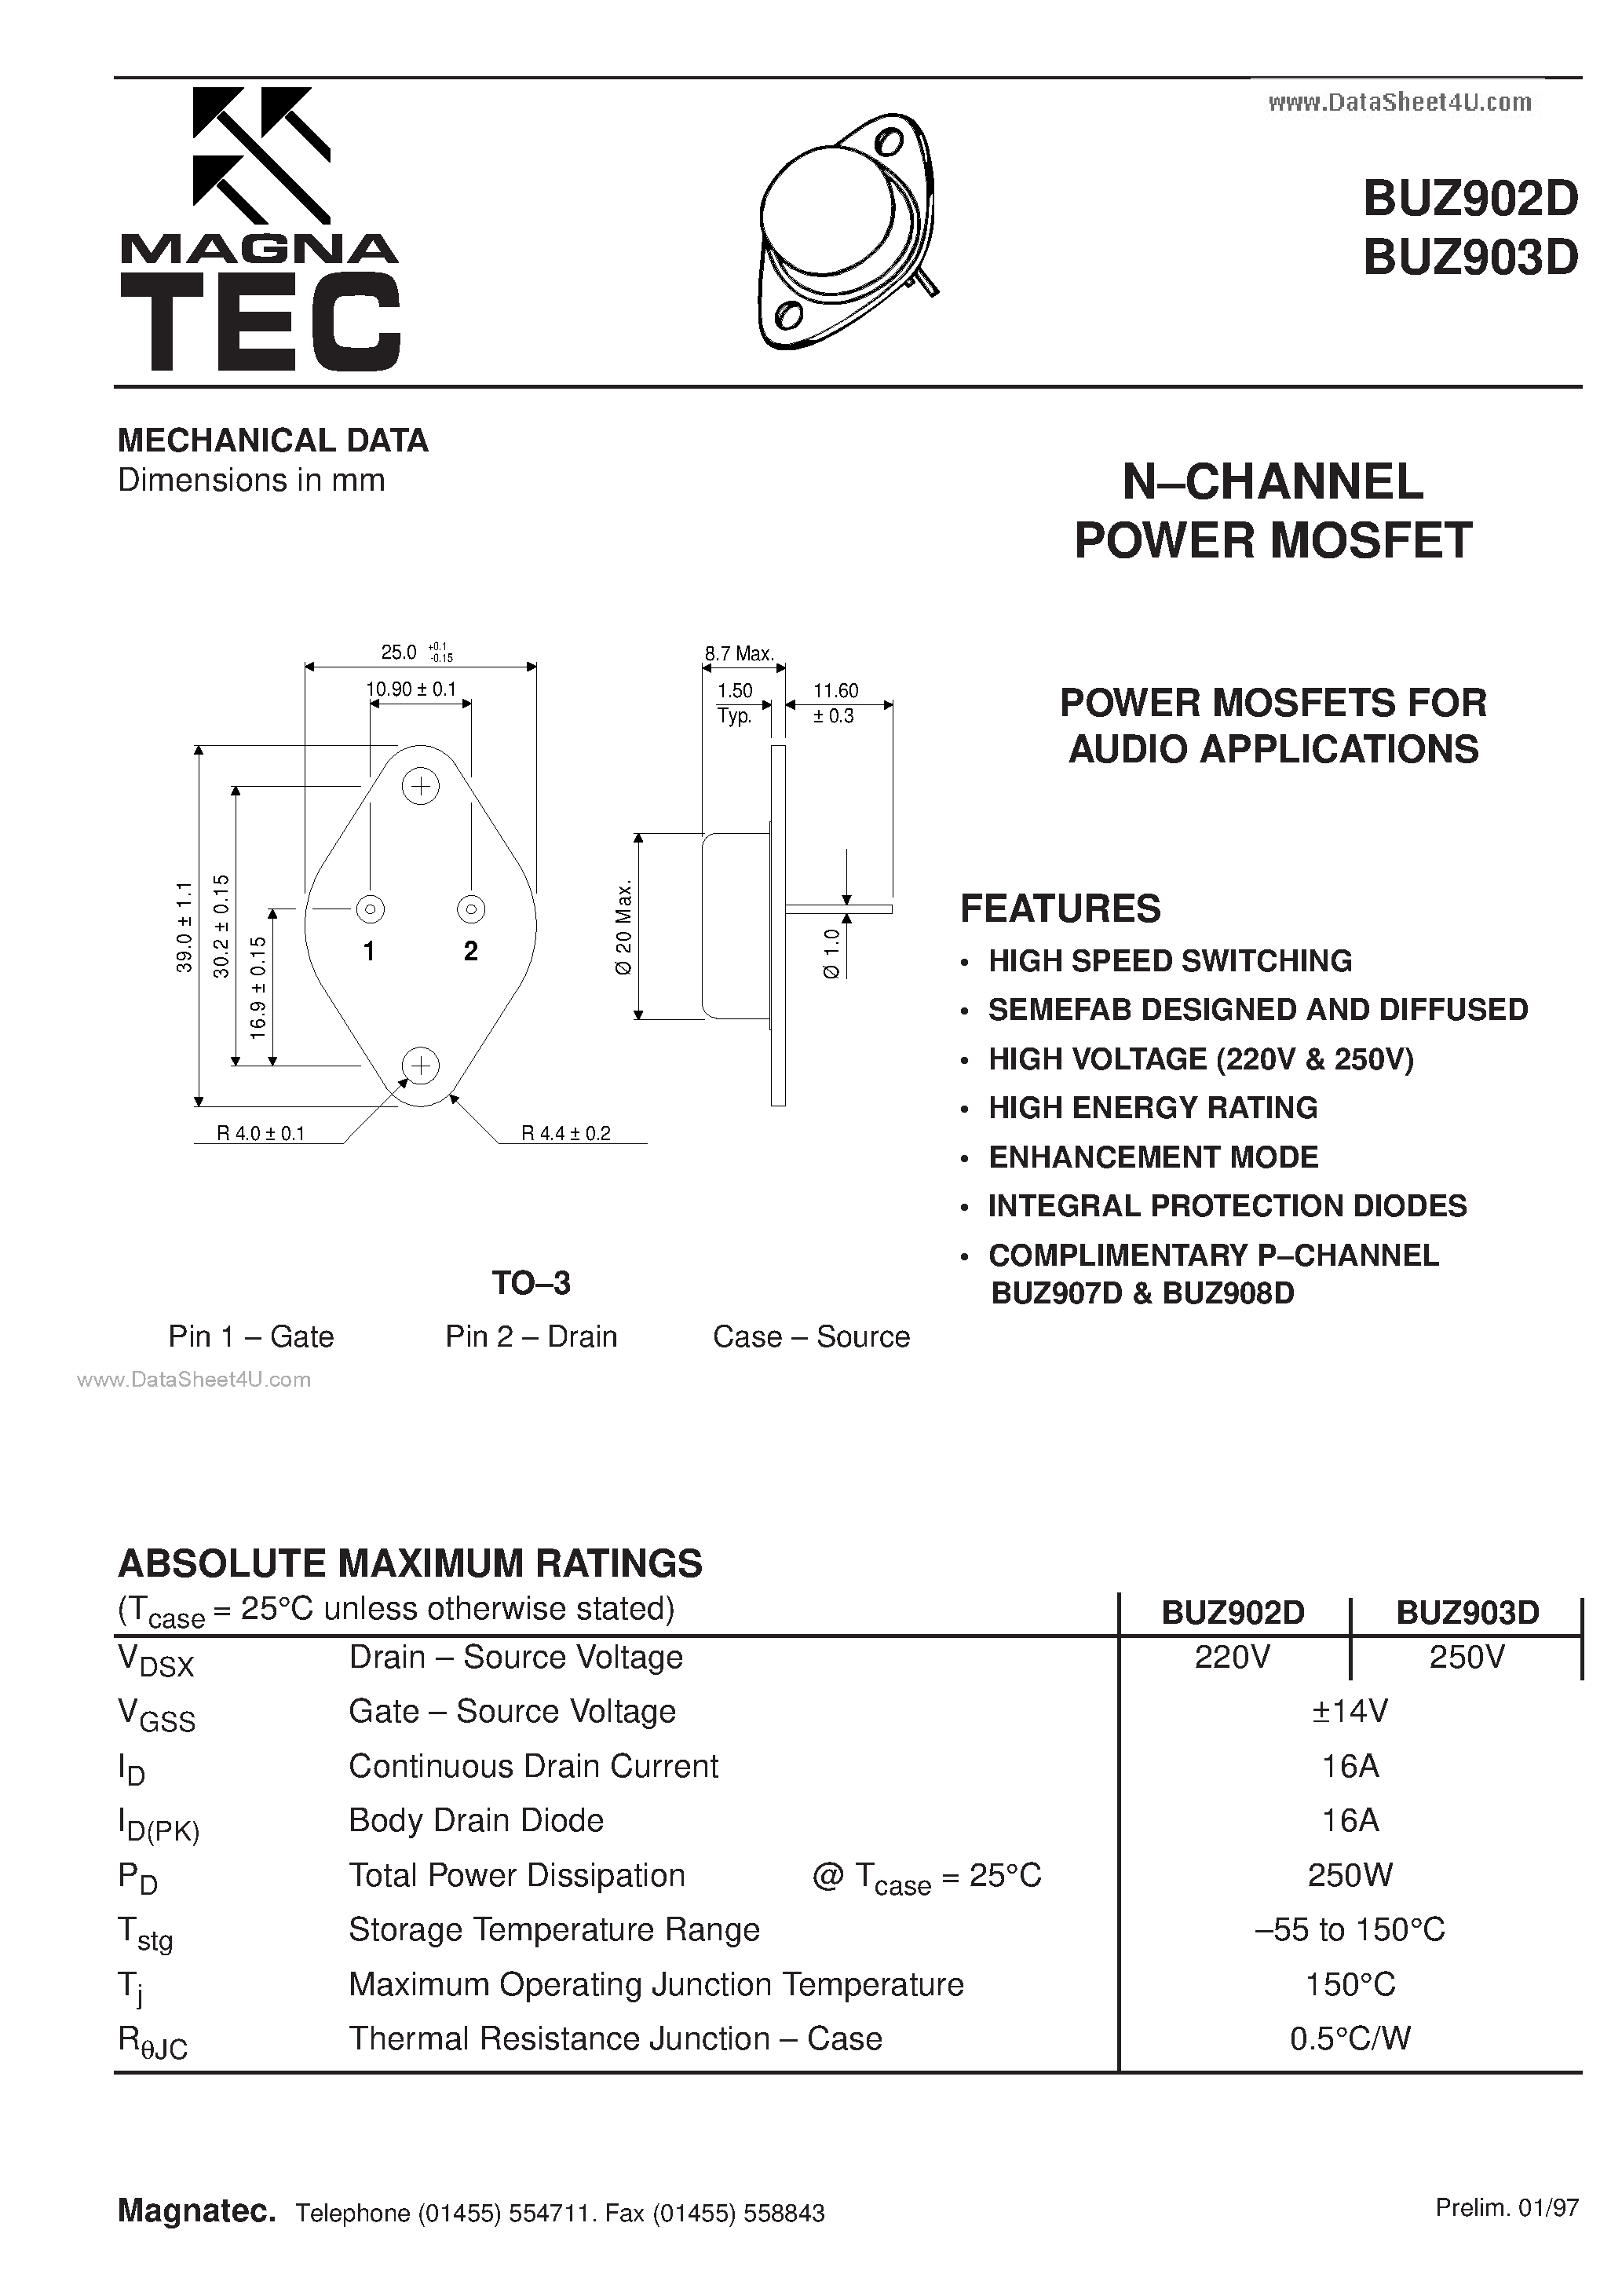 Datasheet BUZ902D - (BUZ902D / BUZ903D) N CHANNEL POWER MOSFET page 1